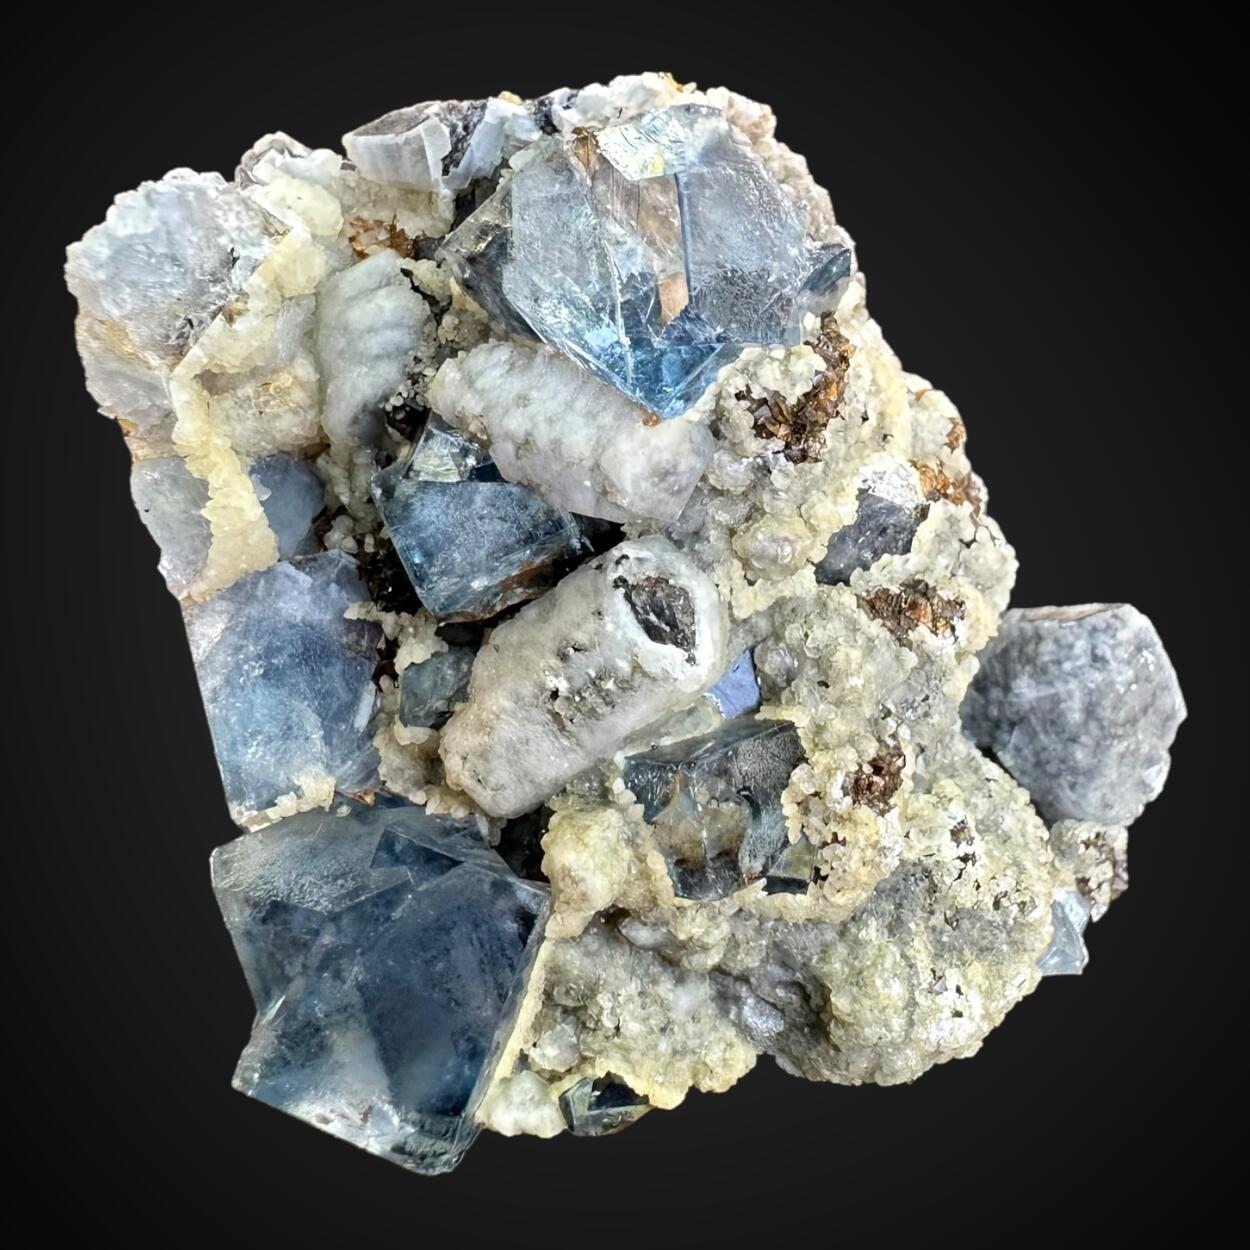 Fluorite & Calcite With Quartz